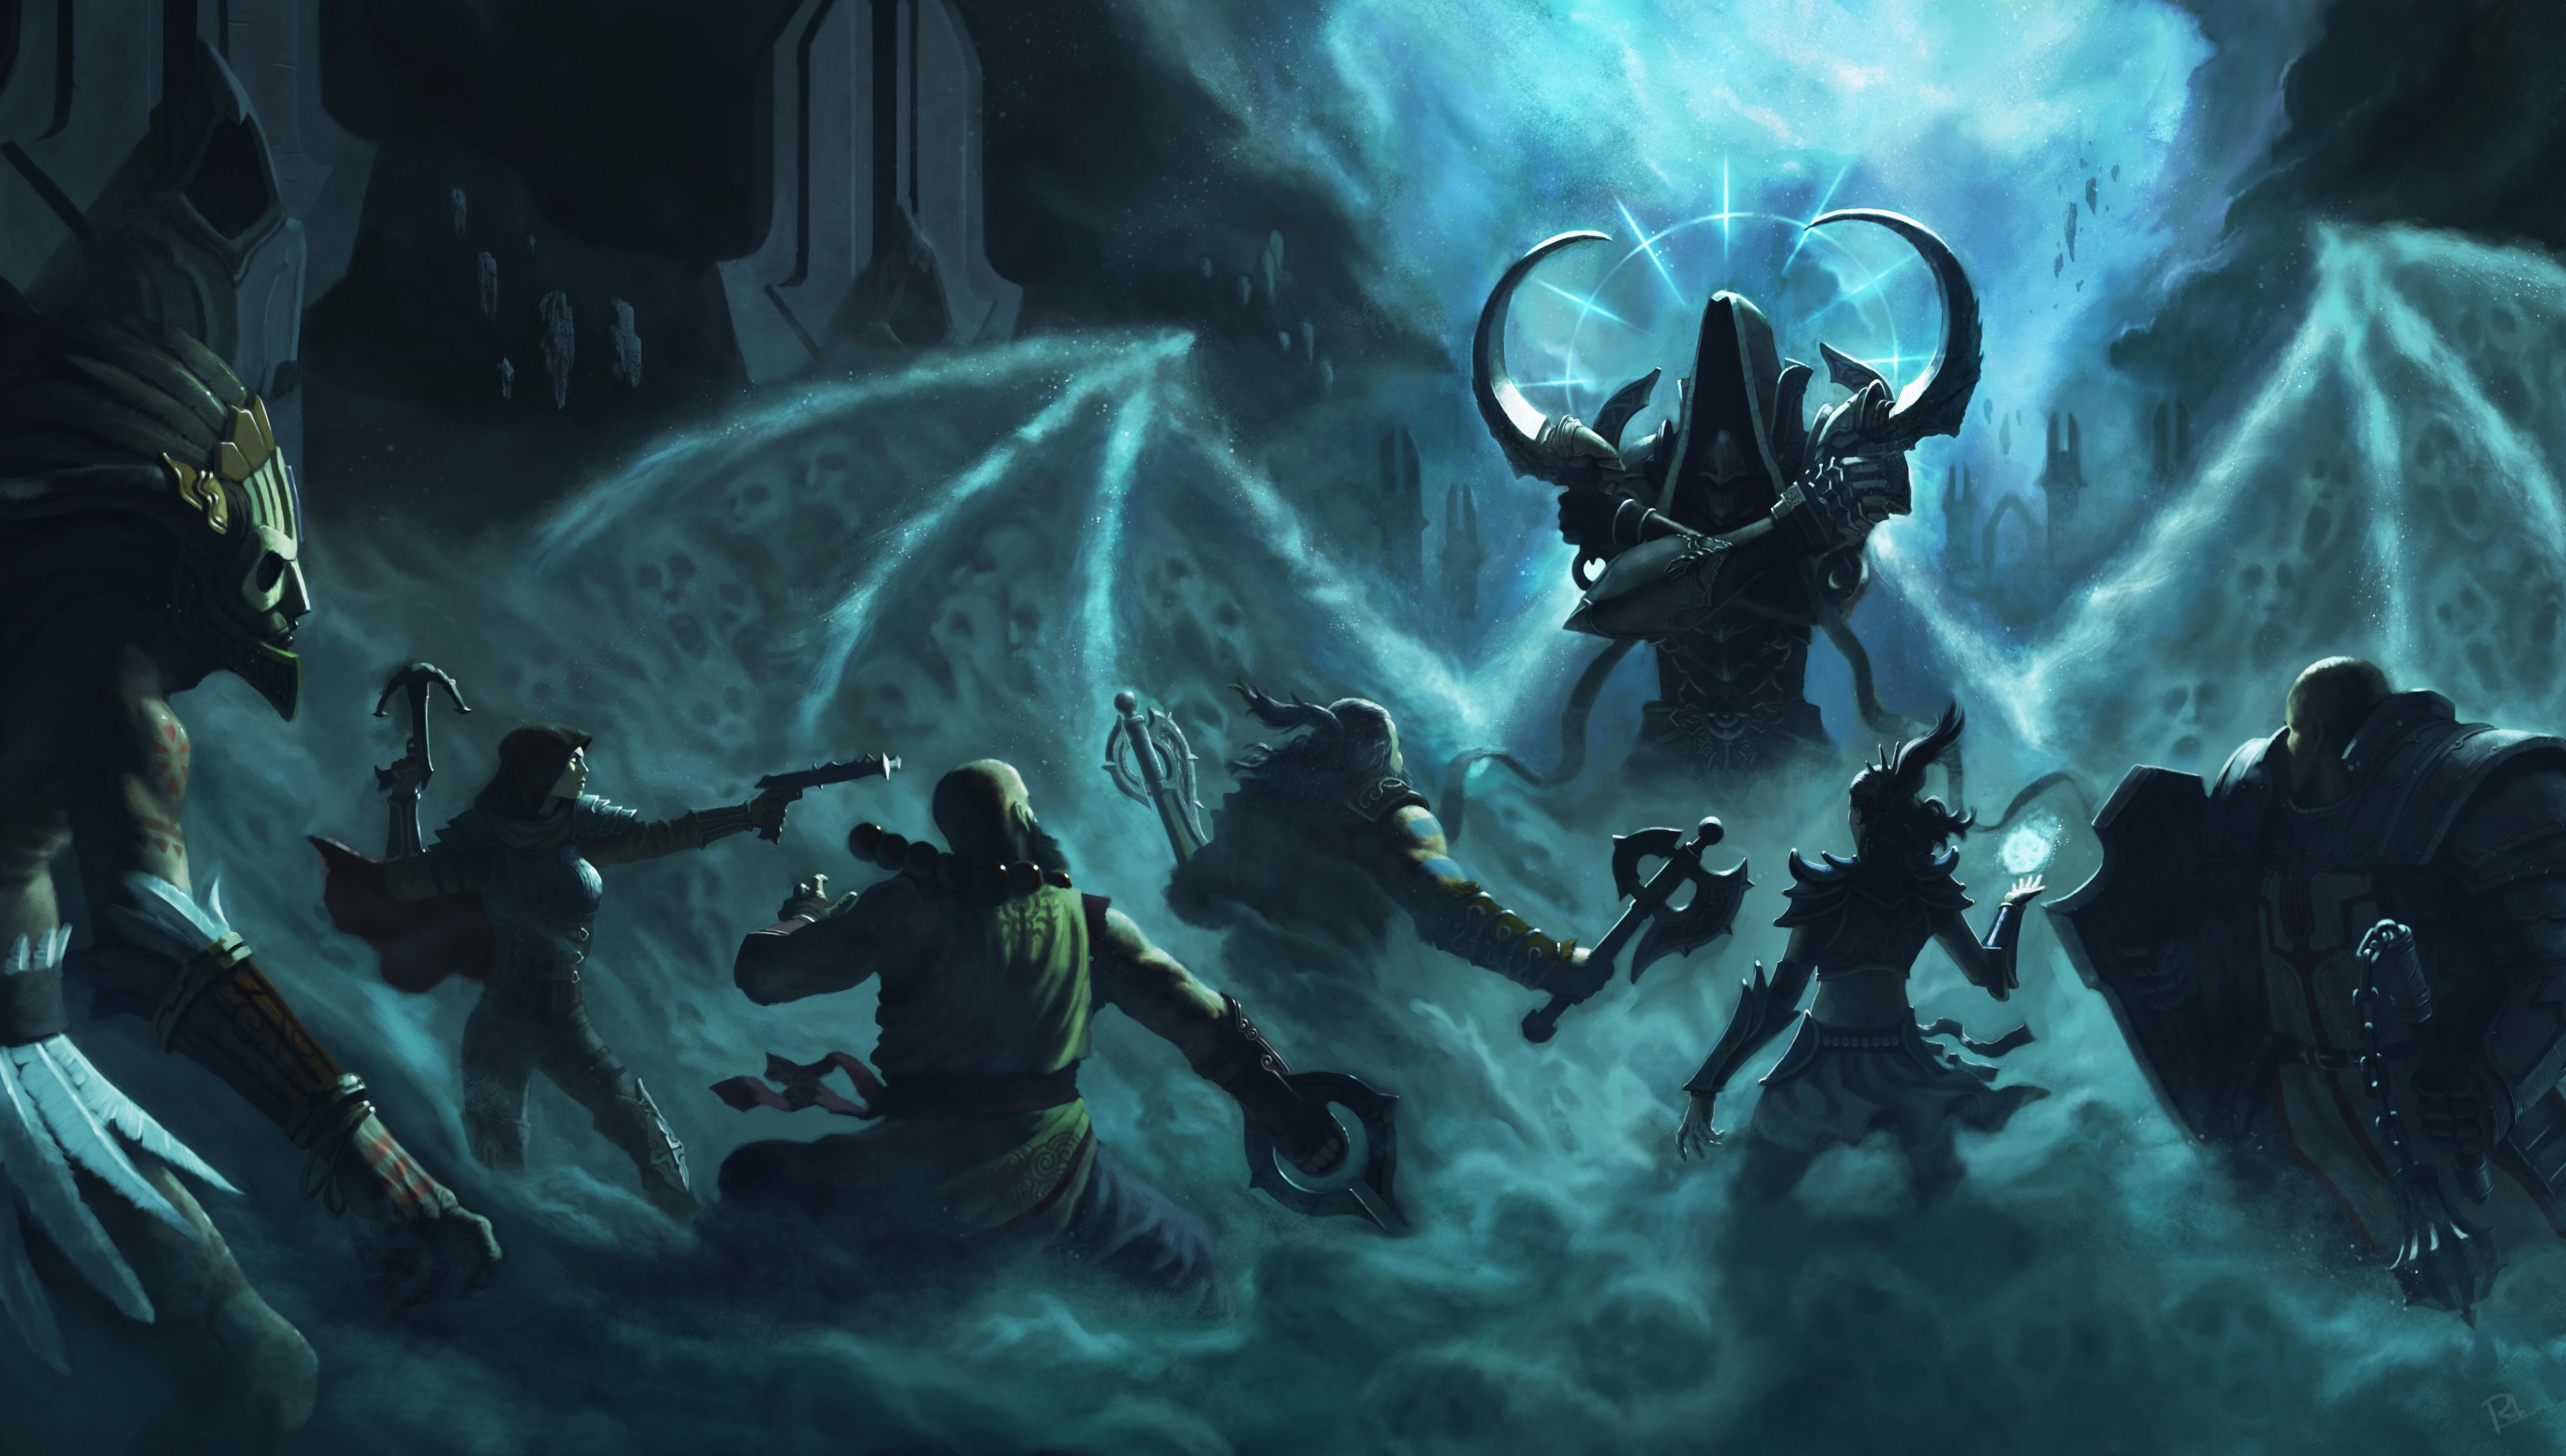 Diablo III: Reaper Of Souls 4k Ultra HD Wallpaper